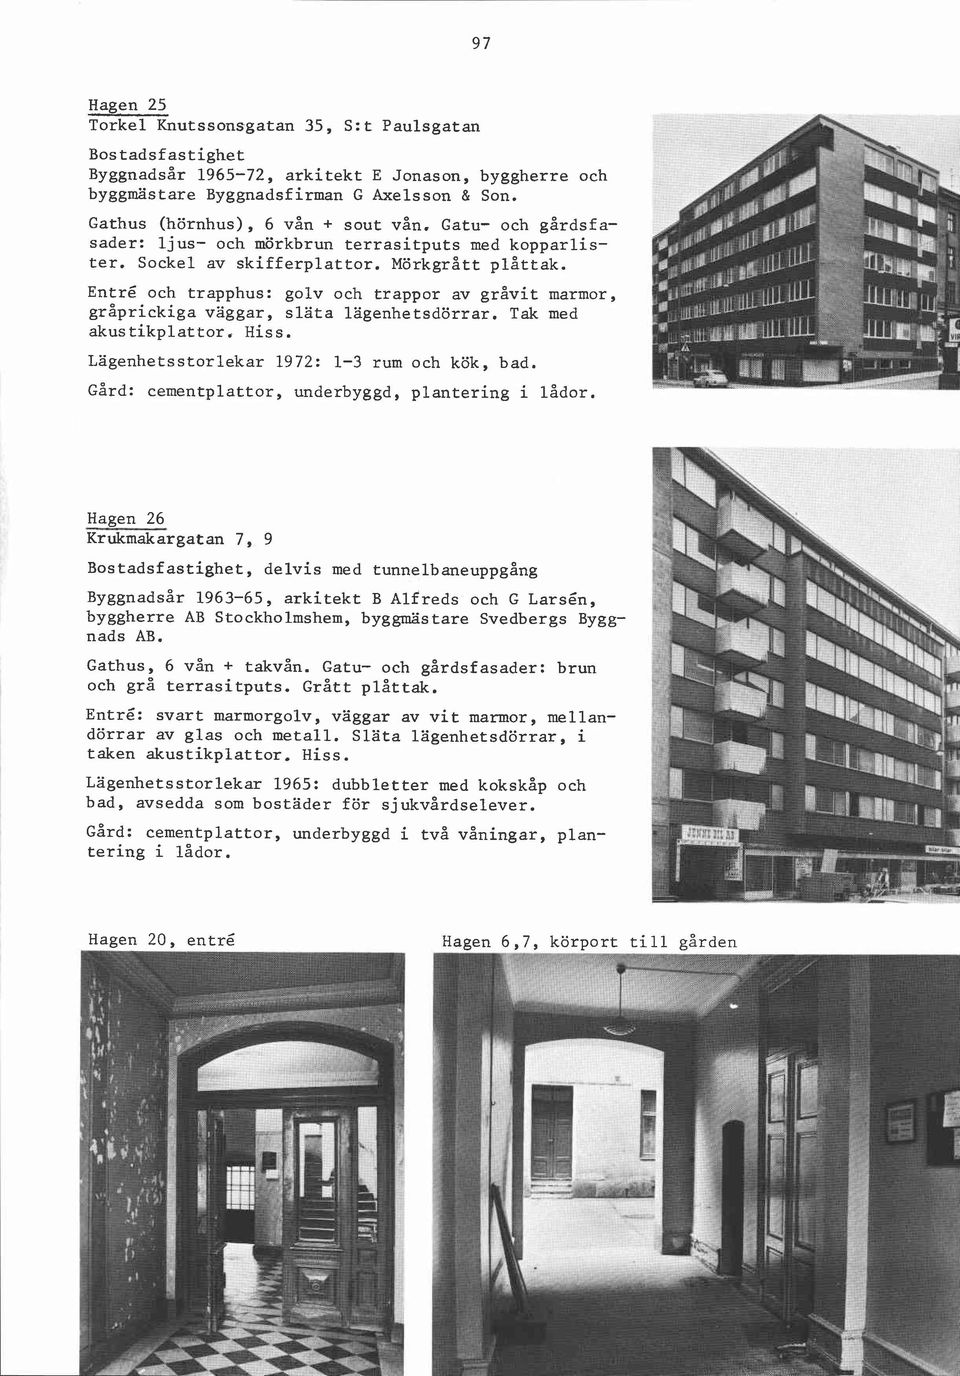 Entré och trapphus: golv och trappor av gråvit marmor, gråprickiga vaggar, släta lagenhetsdörrar. Tak med akustikplattor, Hiss. Lägenhetsstorlekar 1972: 1-3 rum och kök, bad.